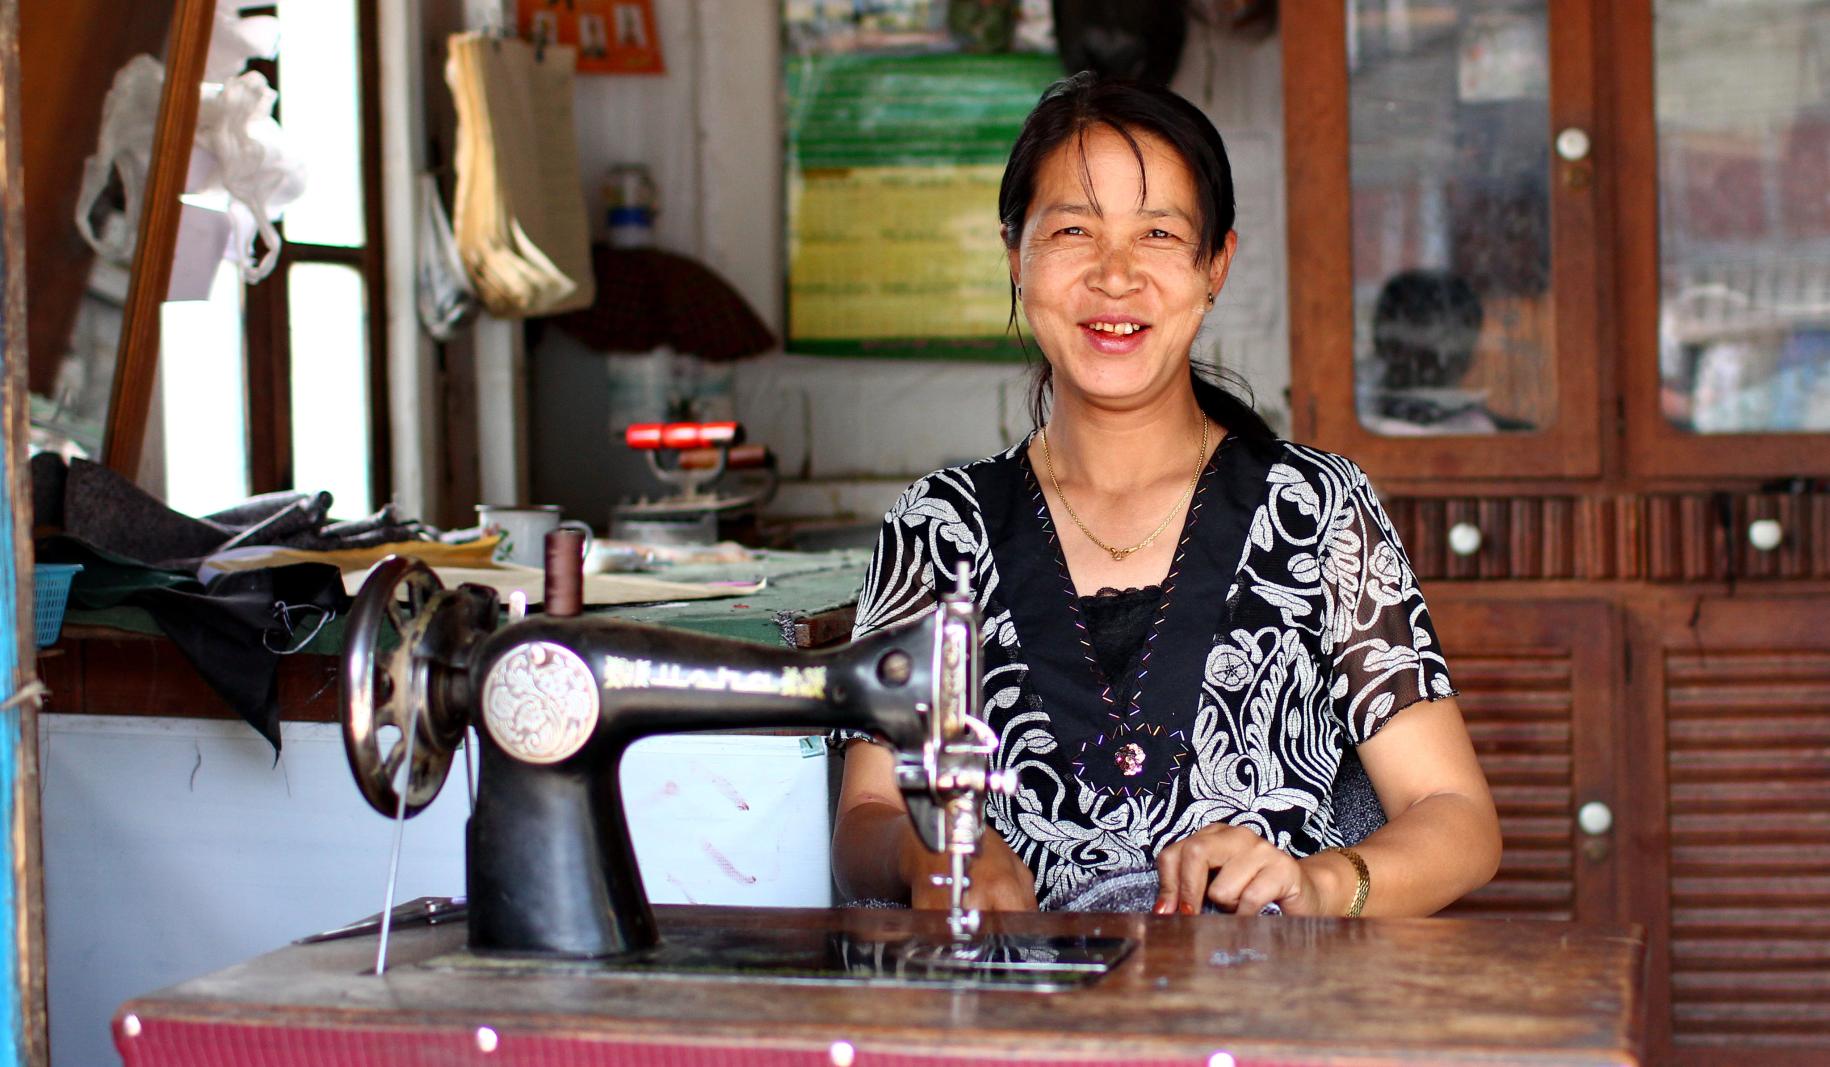 تستخدم خياطة دواسة القدم لتشغيل ماكينة الخياطة الخاصة بها في ميانمار.